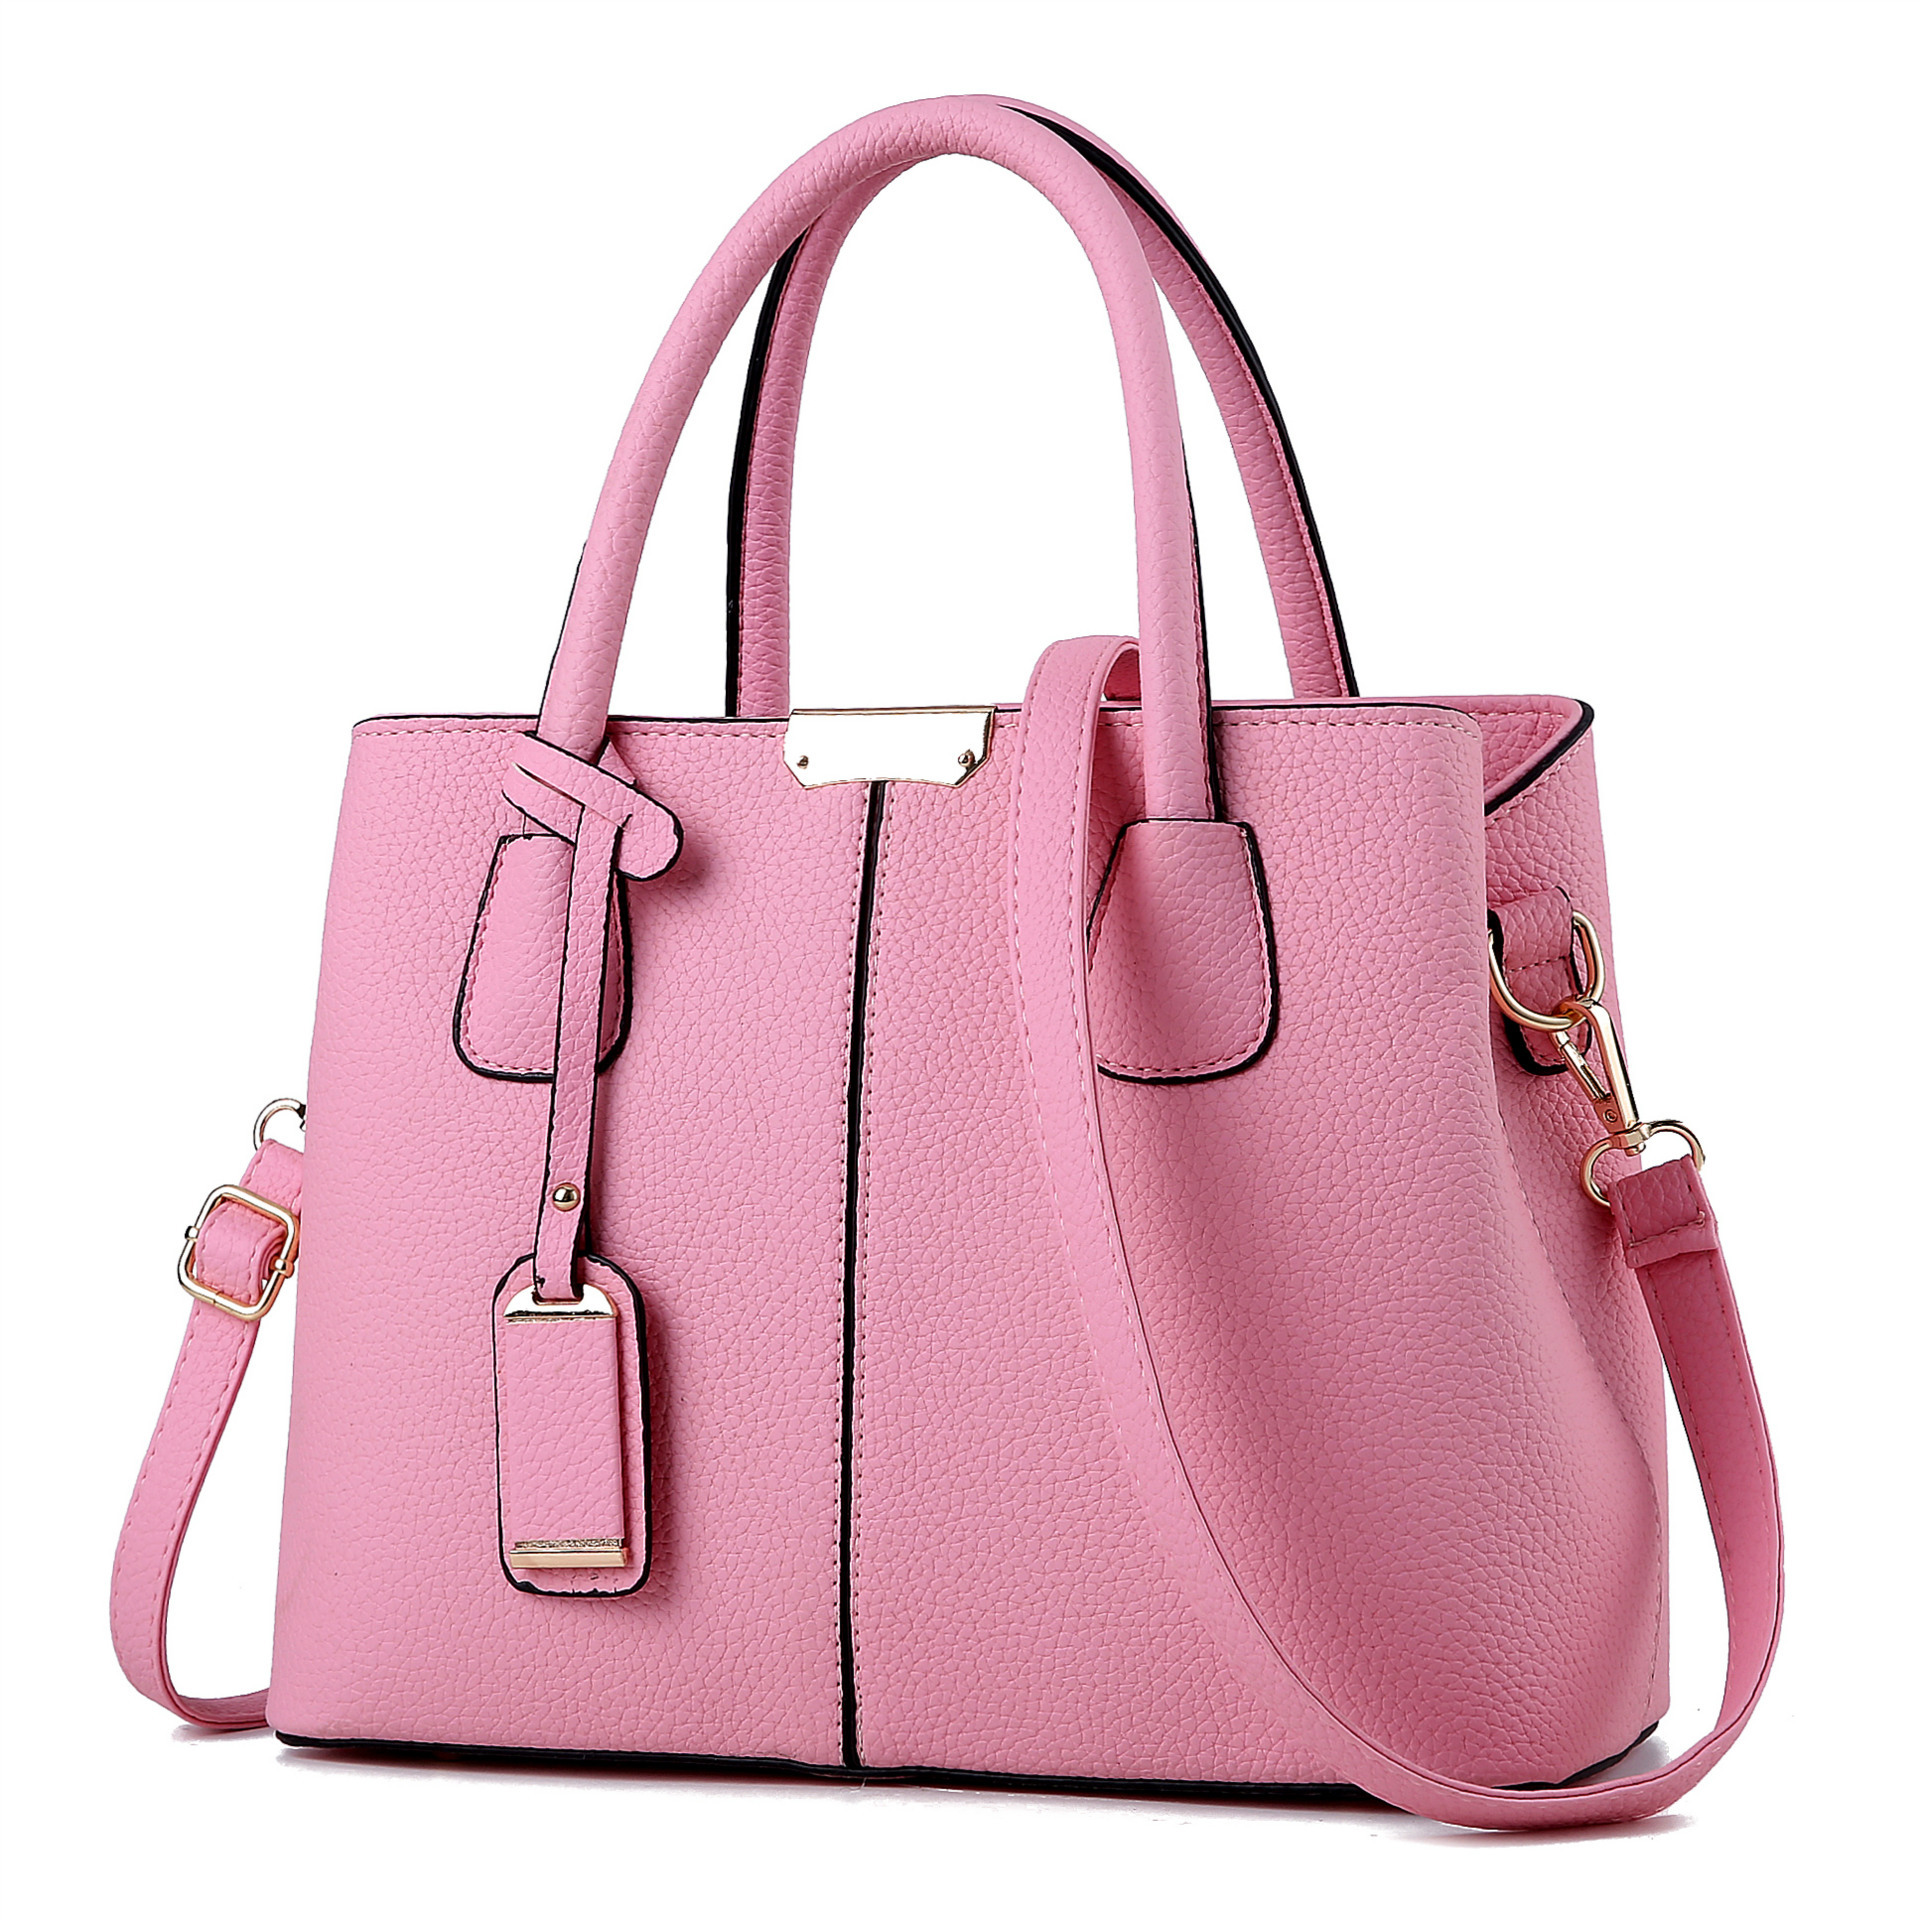 2021 spring Korean version of the new women's bag simple fashion handbag trend shoulder bag Messenger bag one generation